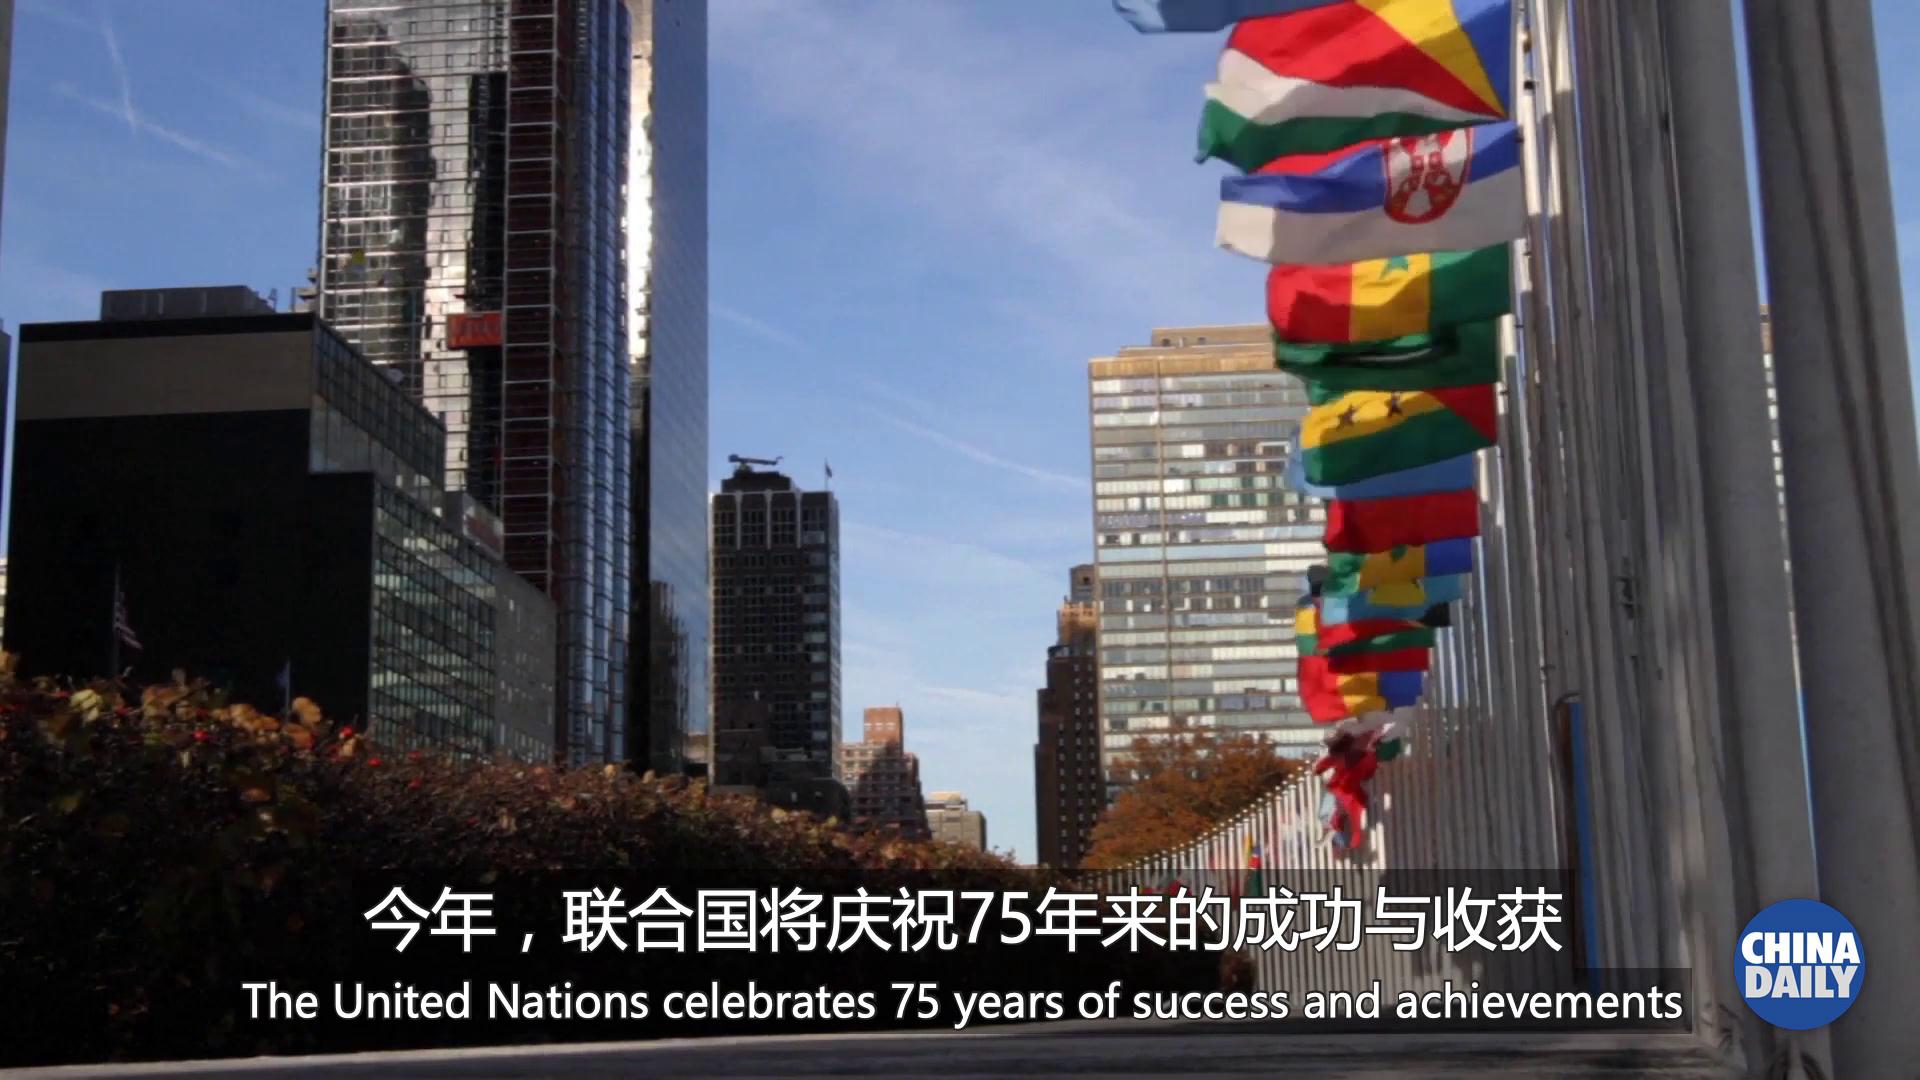 中国在联合国及其未来发展使命中扮演重要角色